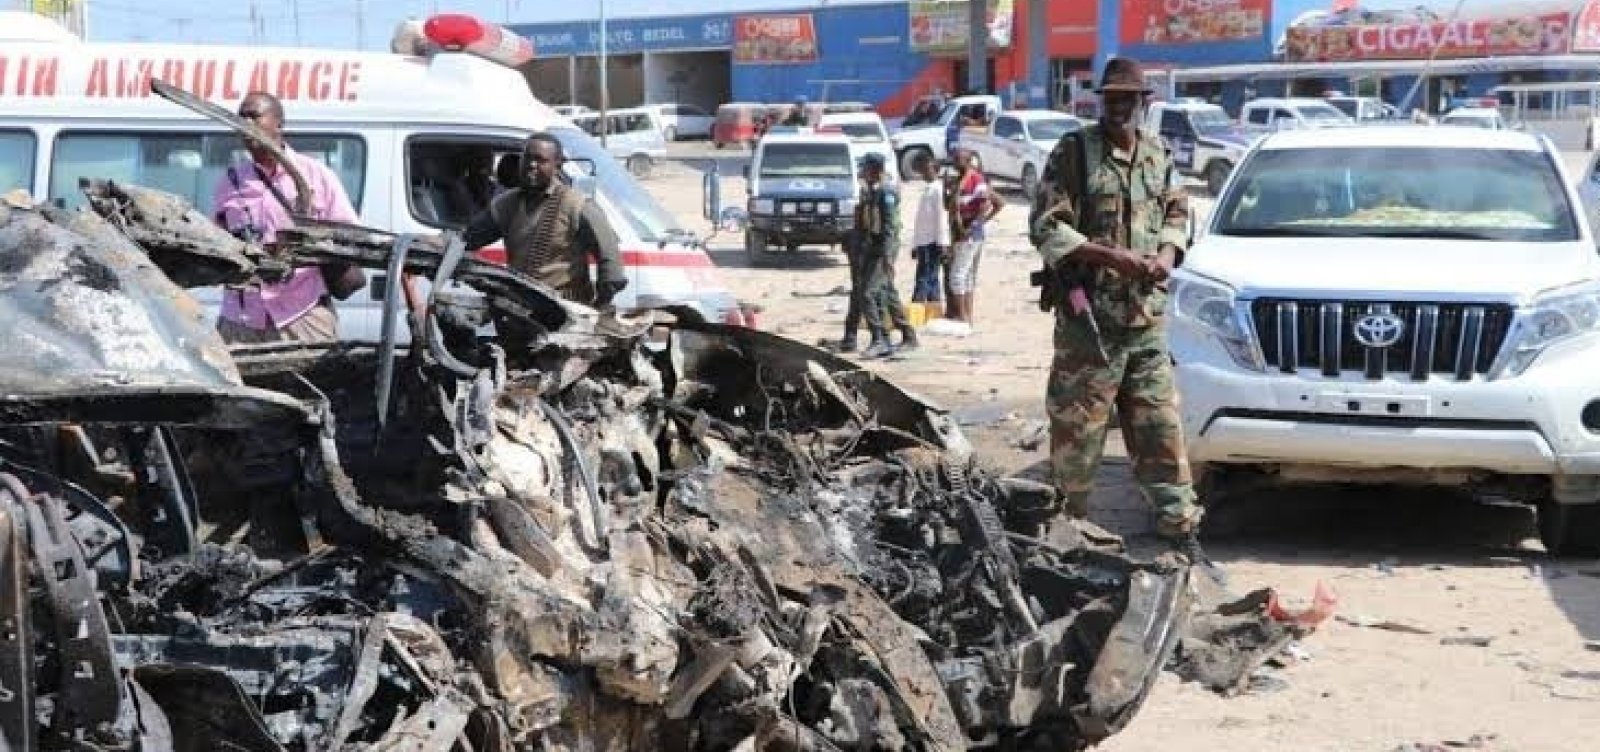 [Carro-bomba deixa ao menos 76 mortos na capital da Somália]